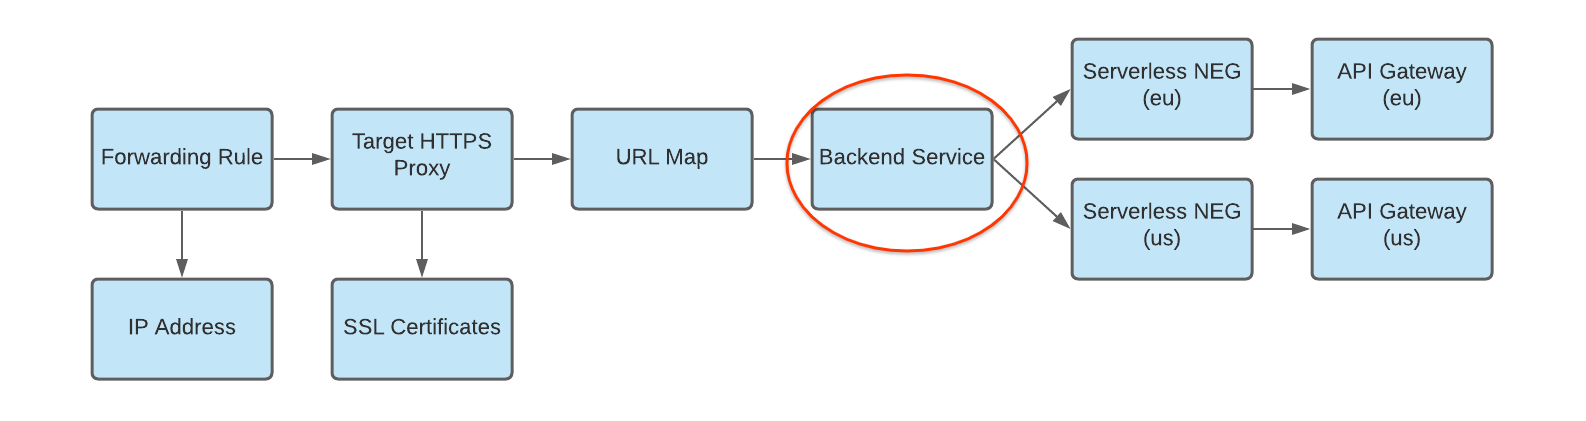 diagrama de NEG sin servidores como backend para un servicio de backend con varias implementaciones